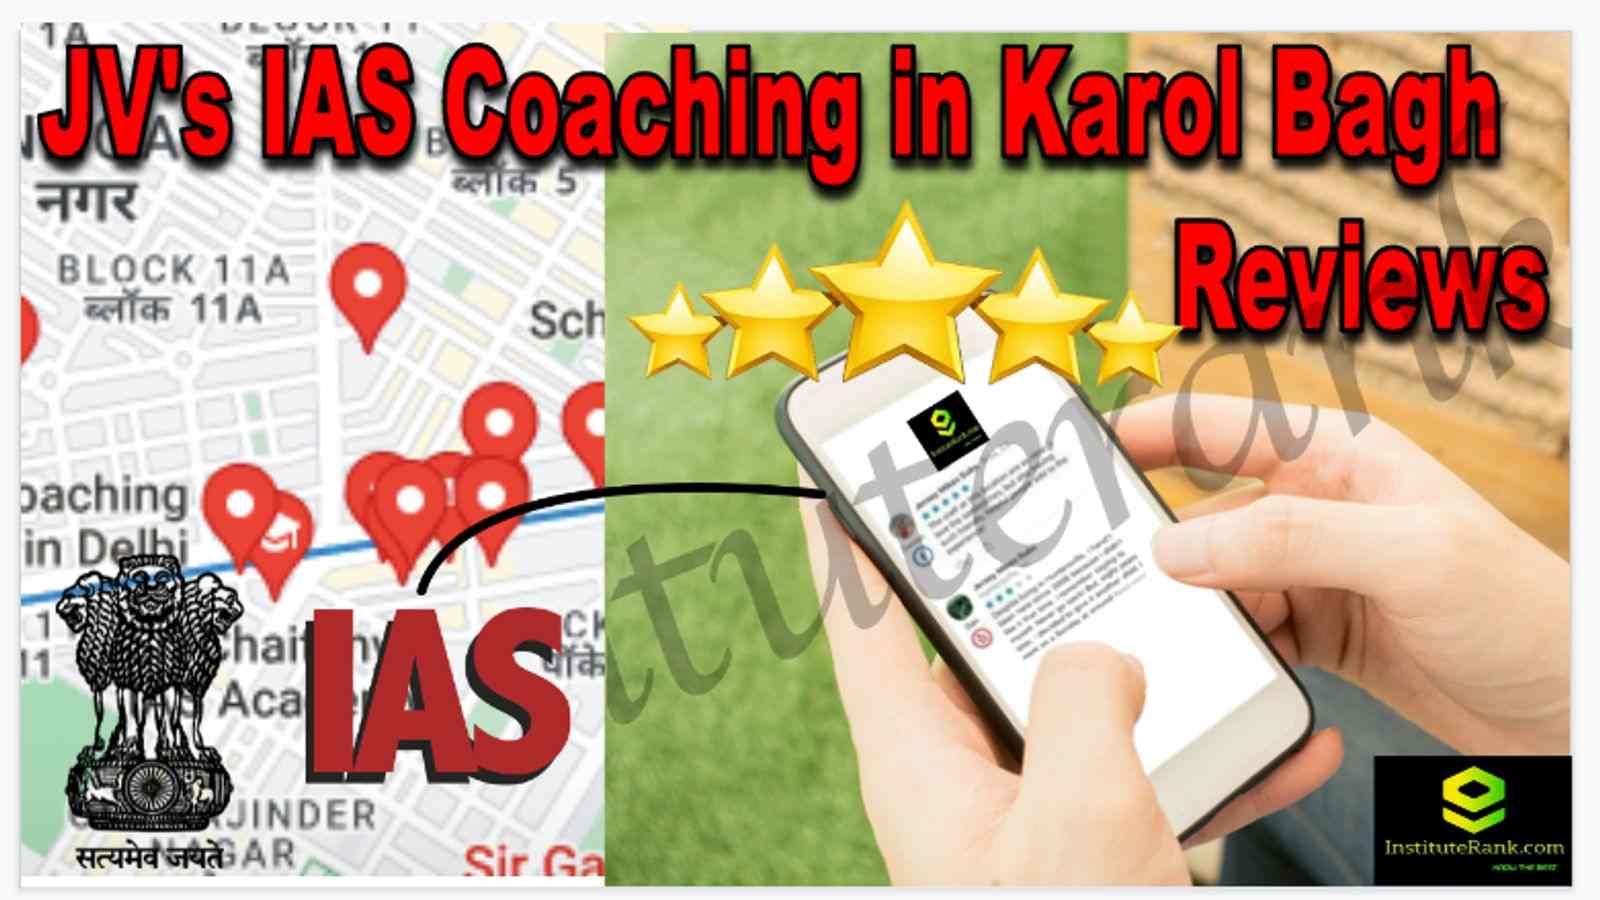 JV's IAS Coaching in Karol Bagh